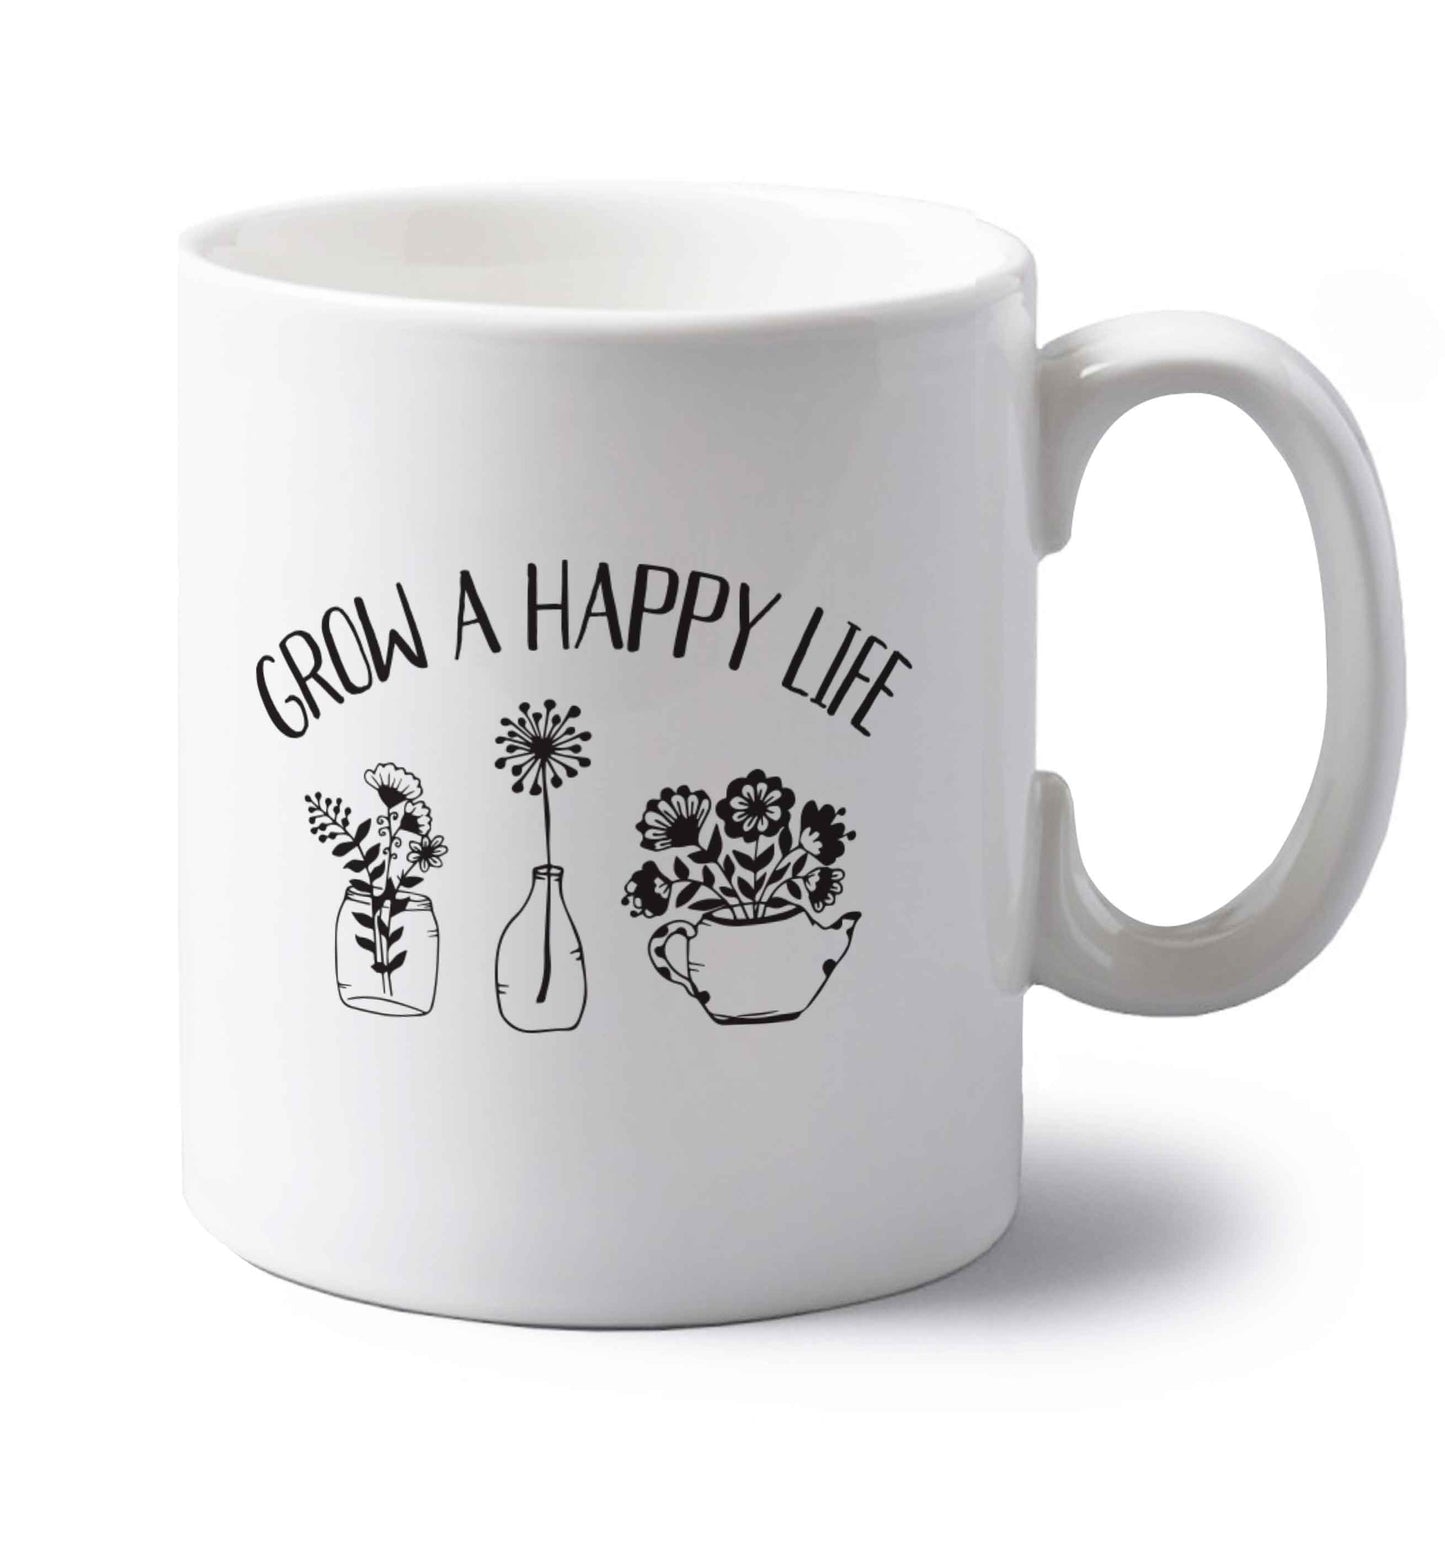 Grow a happy life left handed white ceramic mug 